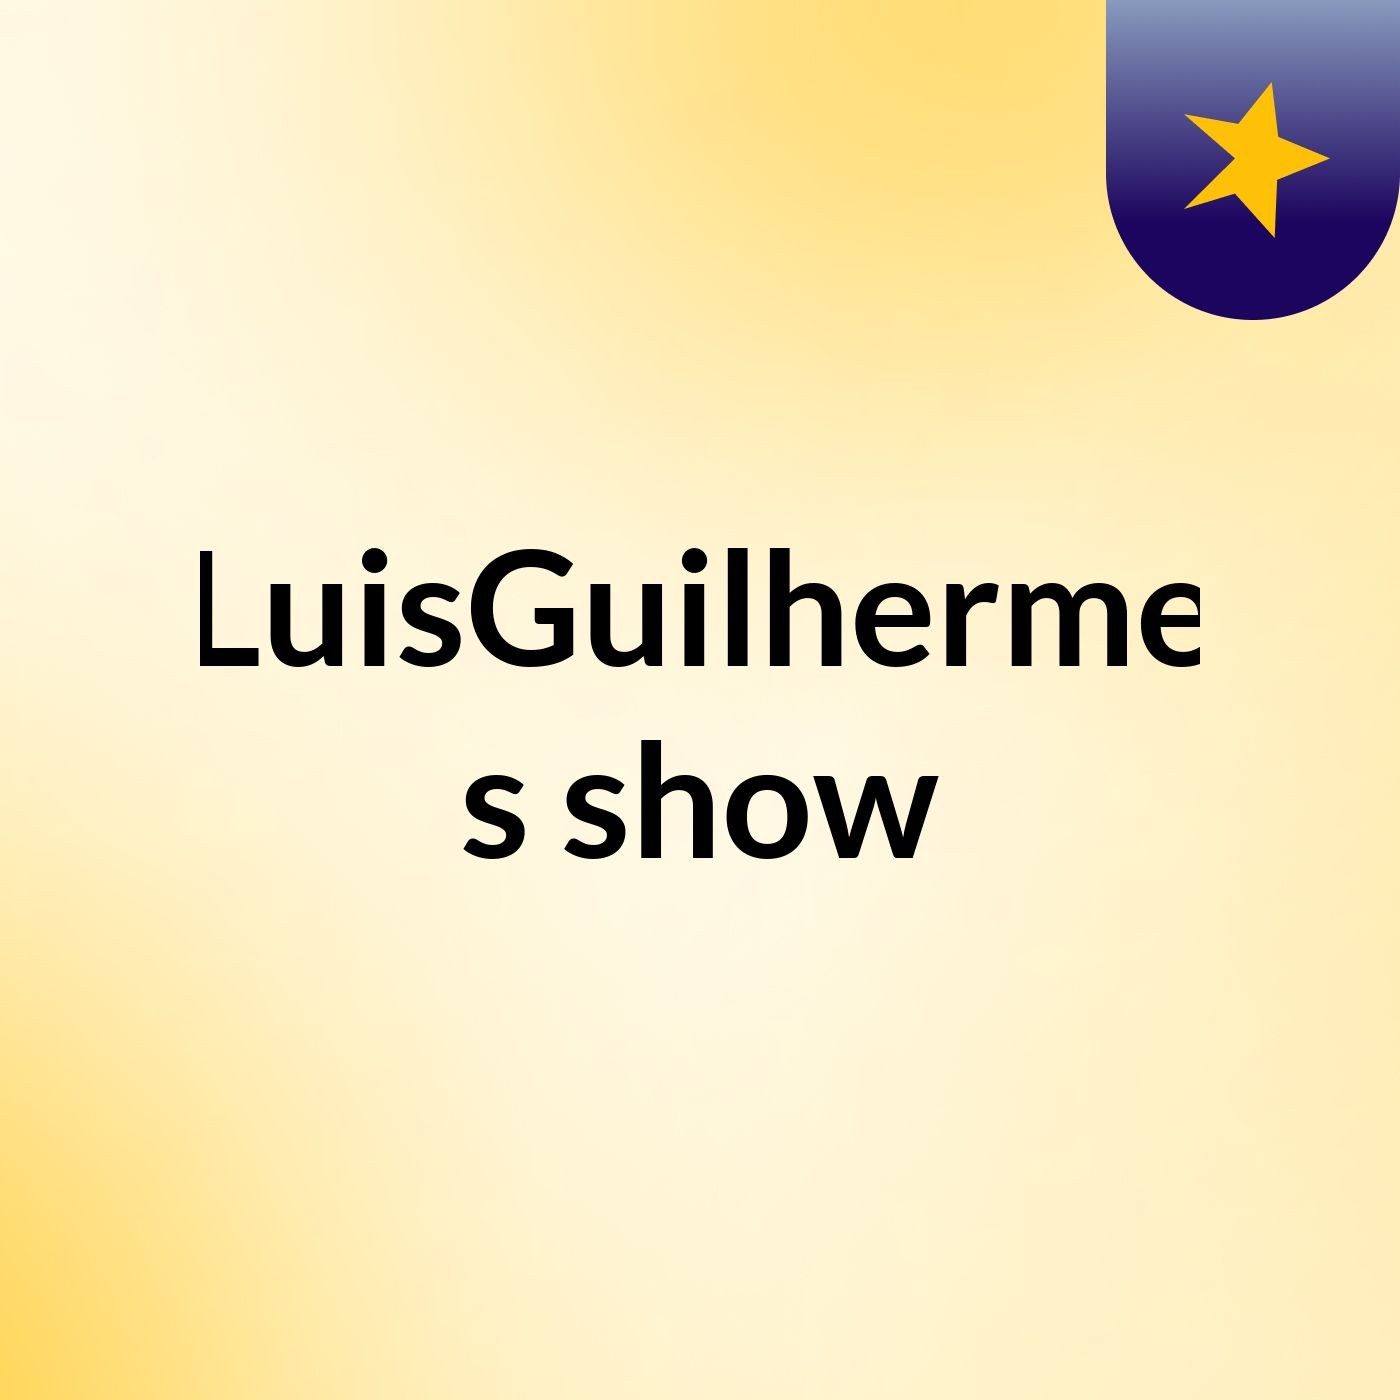 LuisGuilherme's show